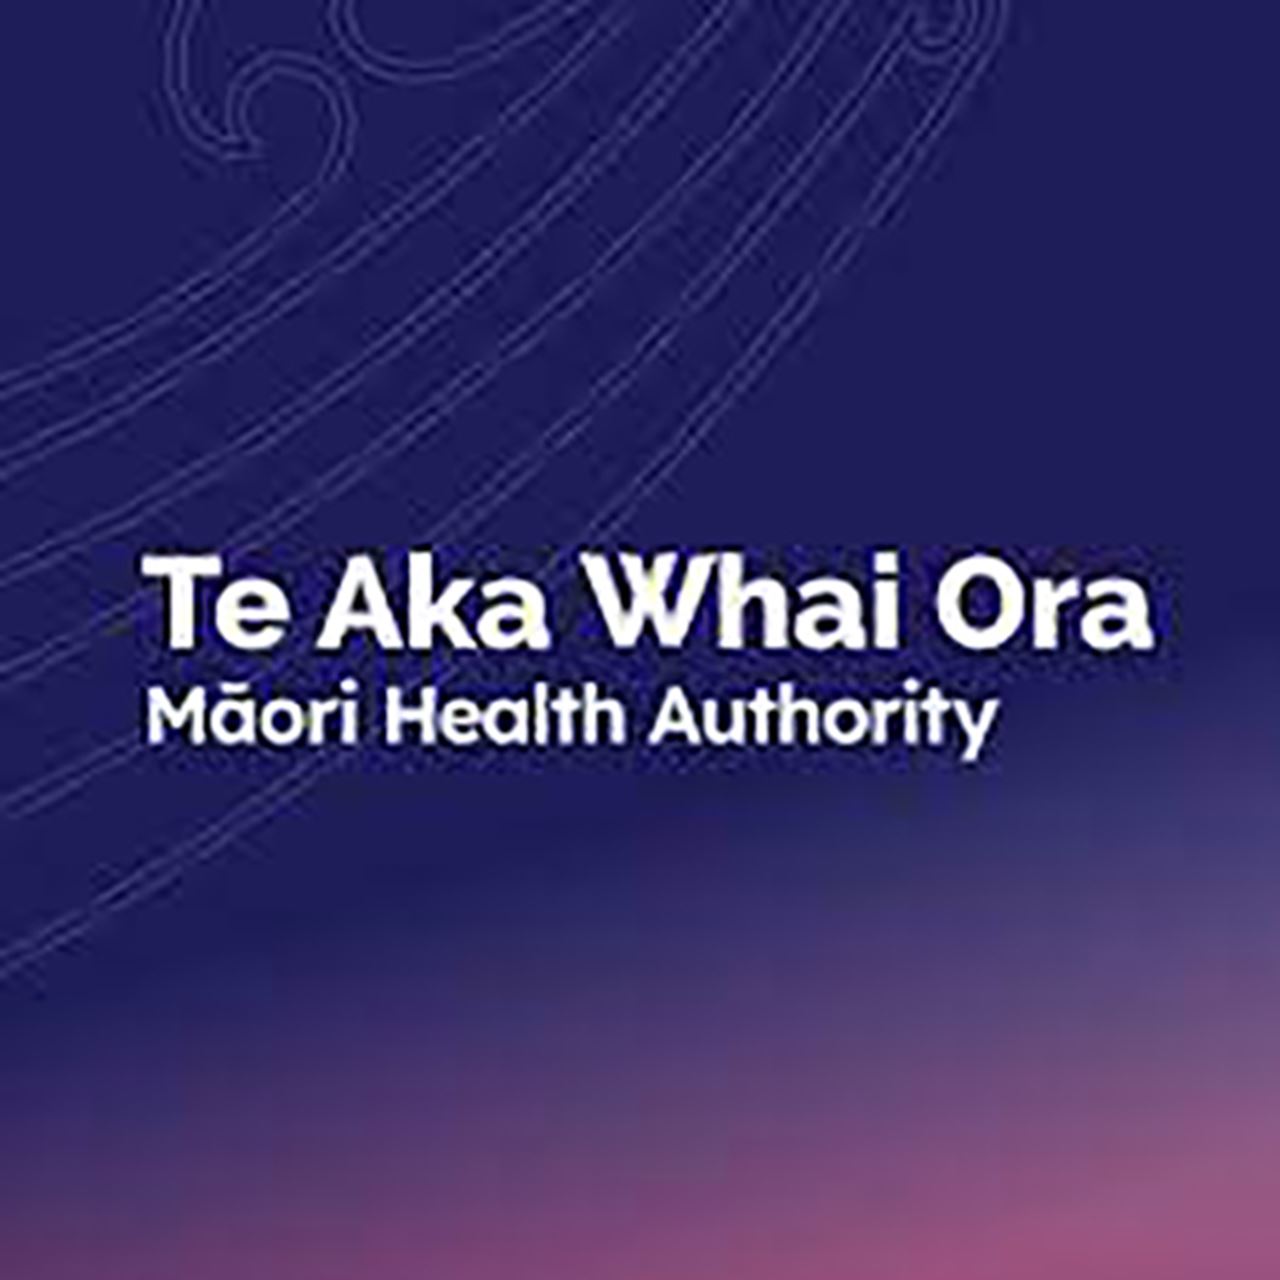 Te Aka Whaiora Logo